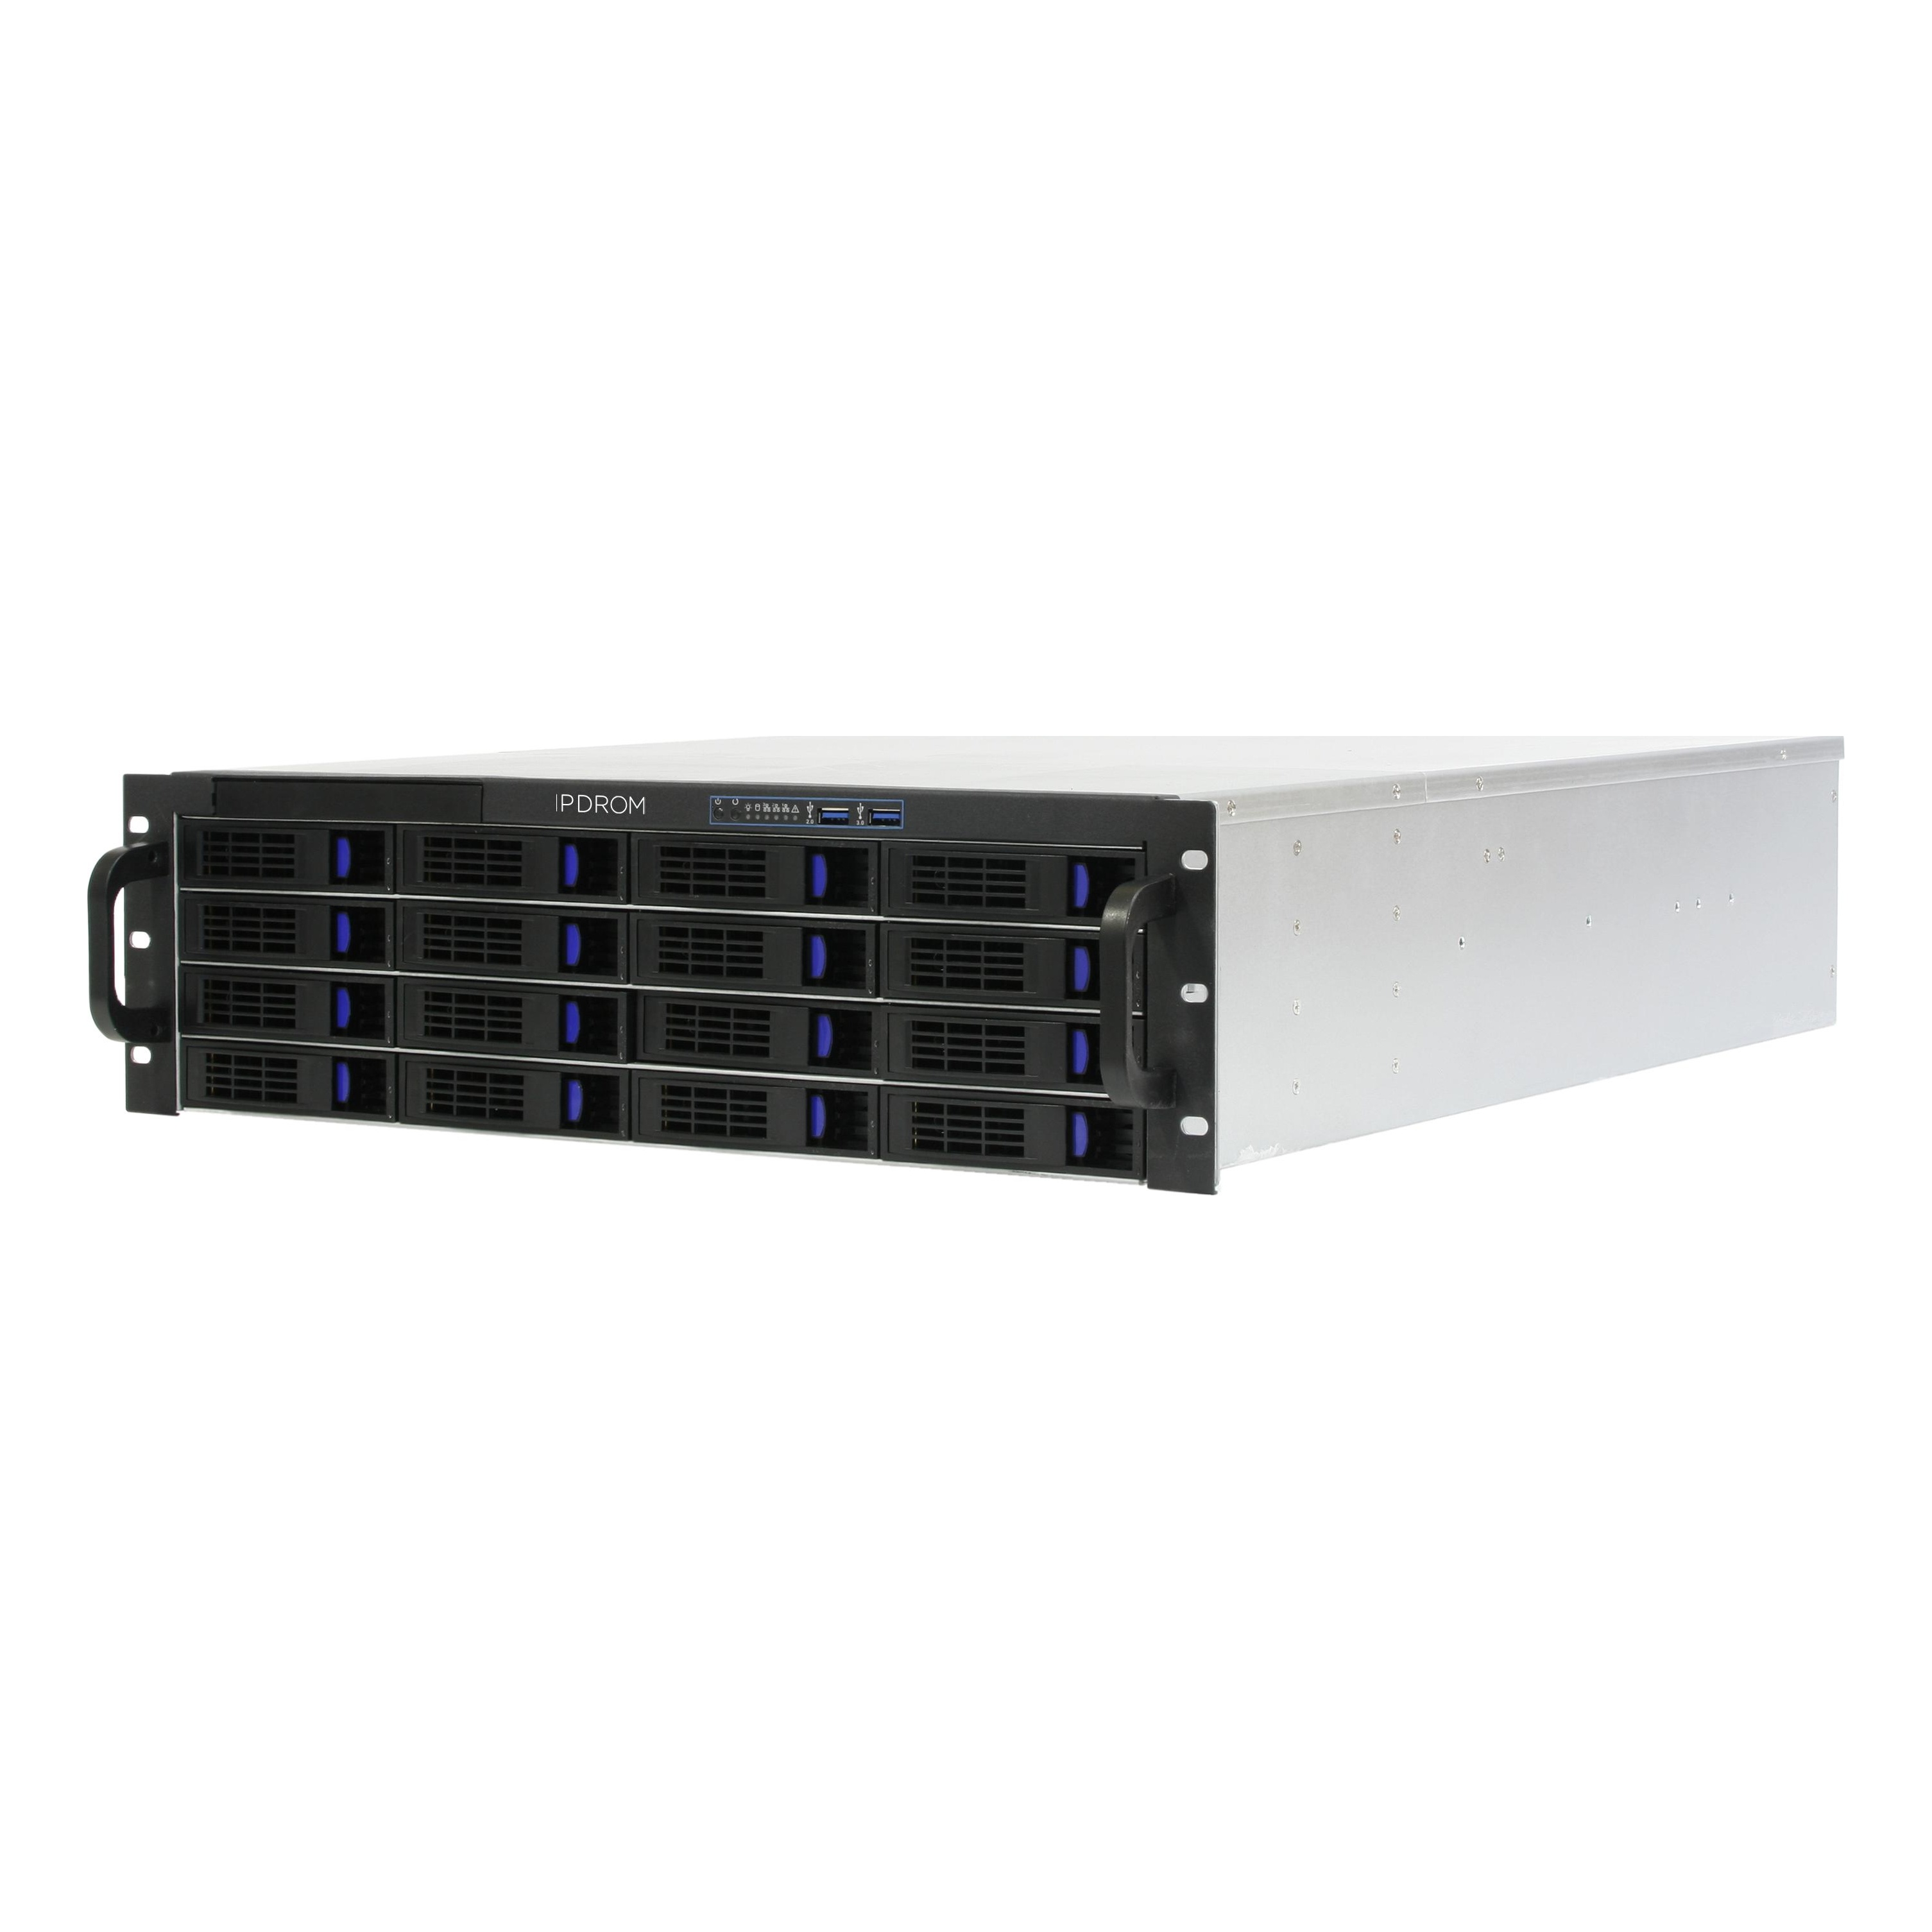 Сервер IPDROM Enterprise (E-96-Р-С3-144/Р6)